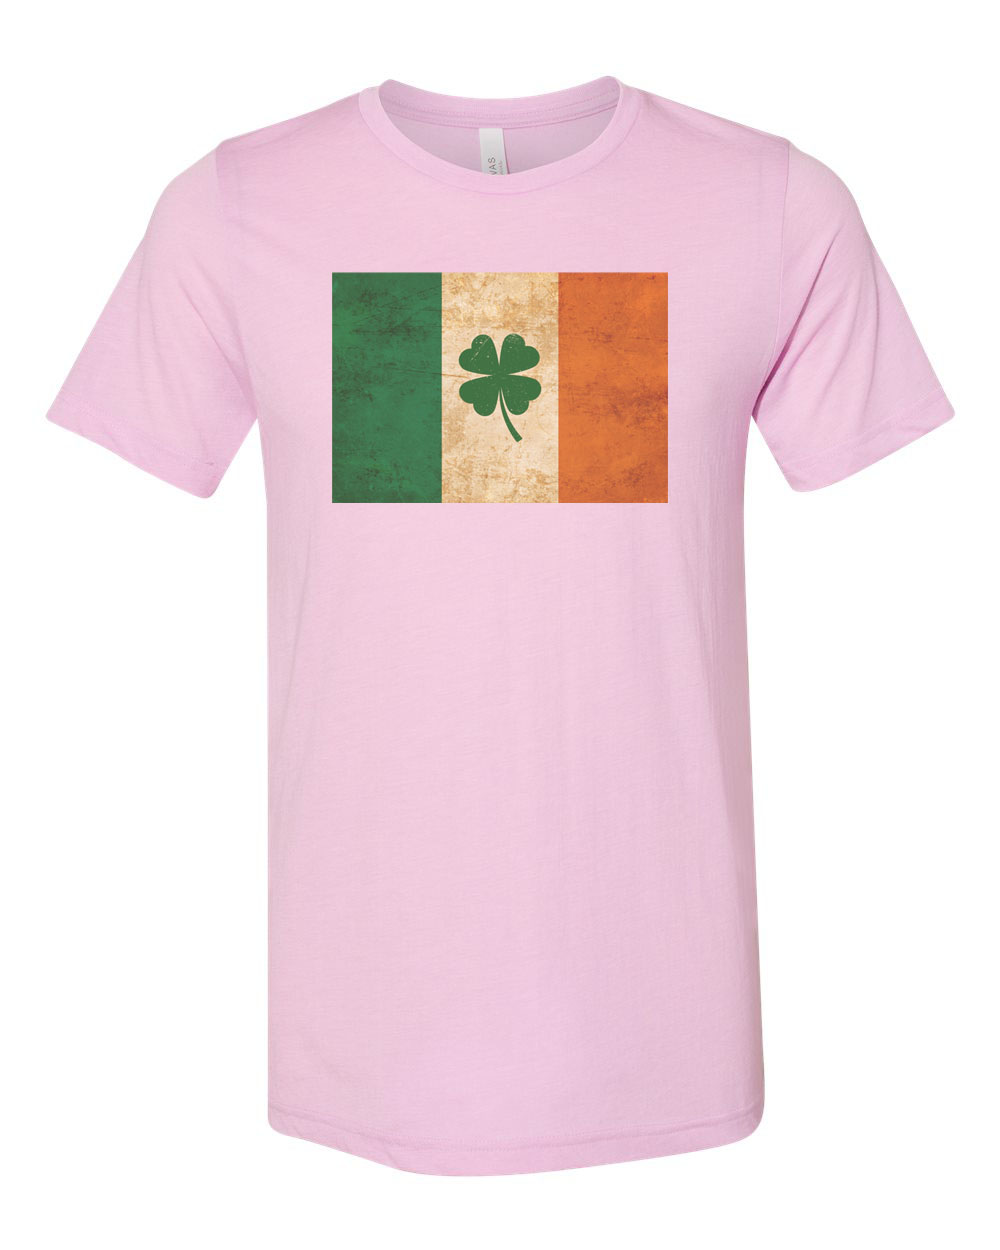 St. Patricks Day Shirt, Shamrock Shirt, Irish Flag, Ireland Shirt, Unisex Fit, Irish Shirt, Shamrock, Irish Flag Shirt, St Patty's Shirt, Lilac, XL - image 1 of 1